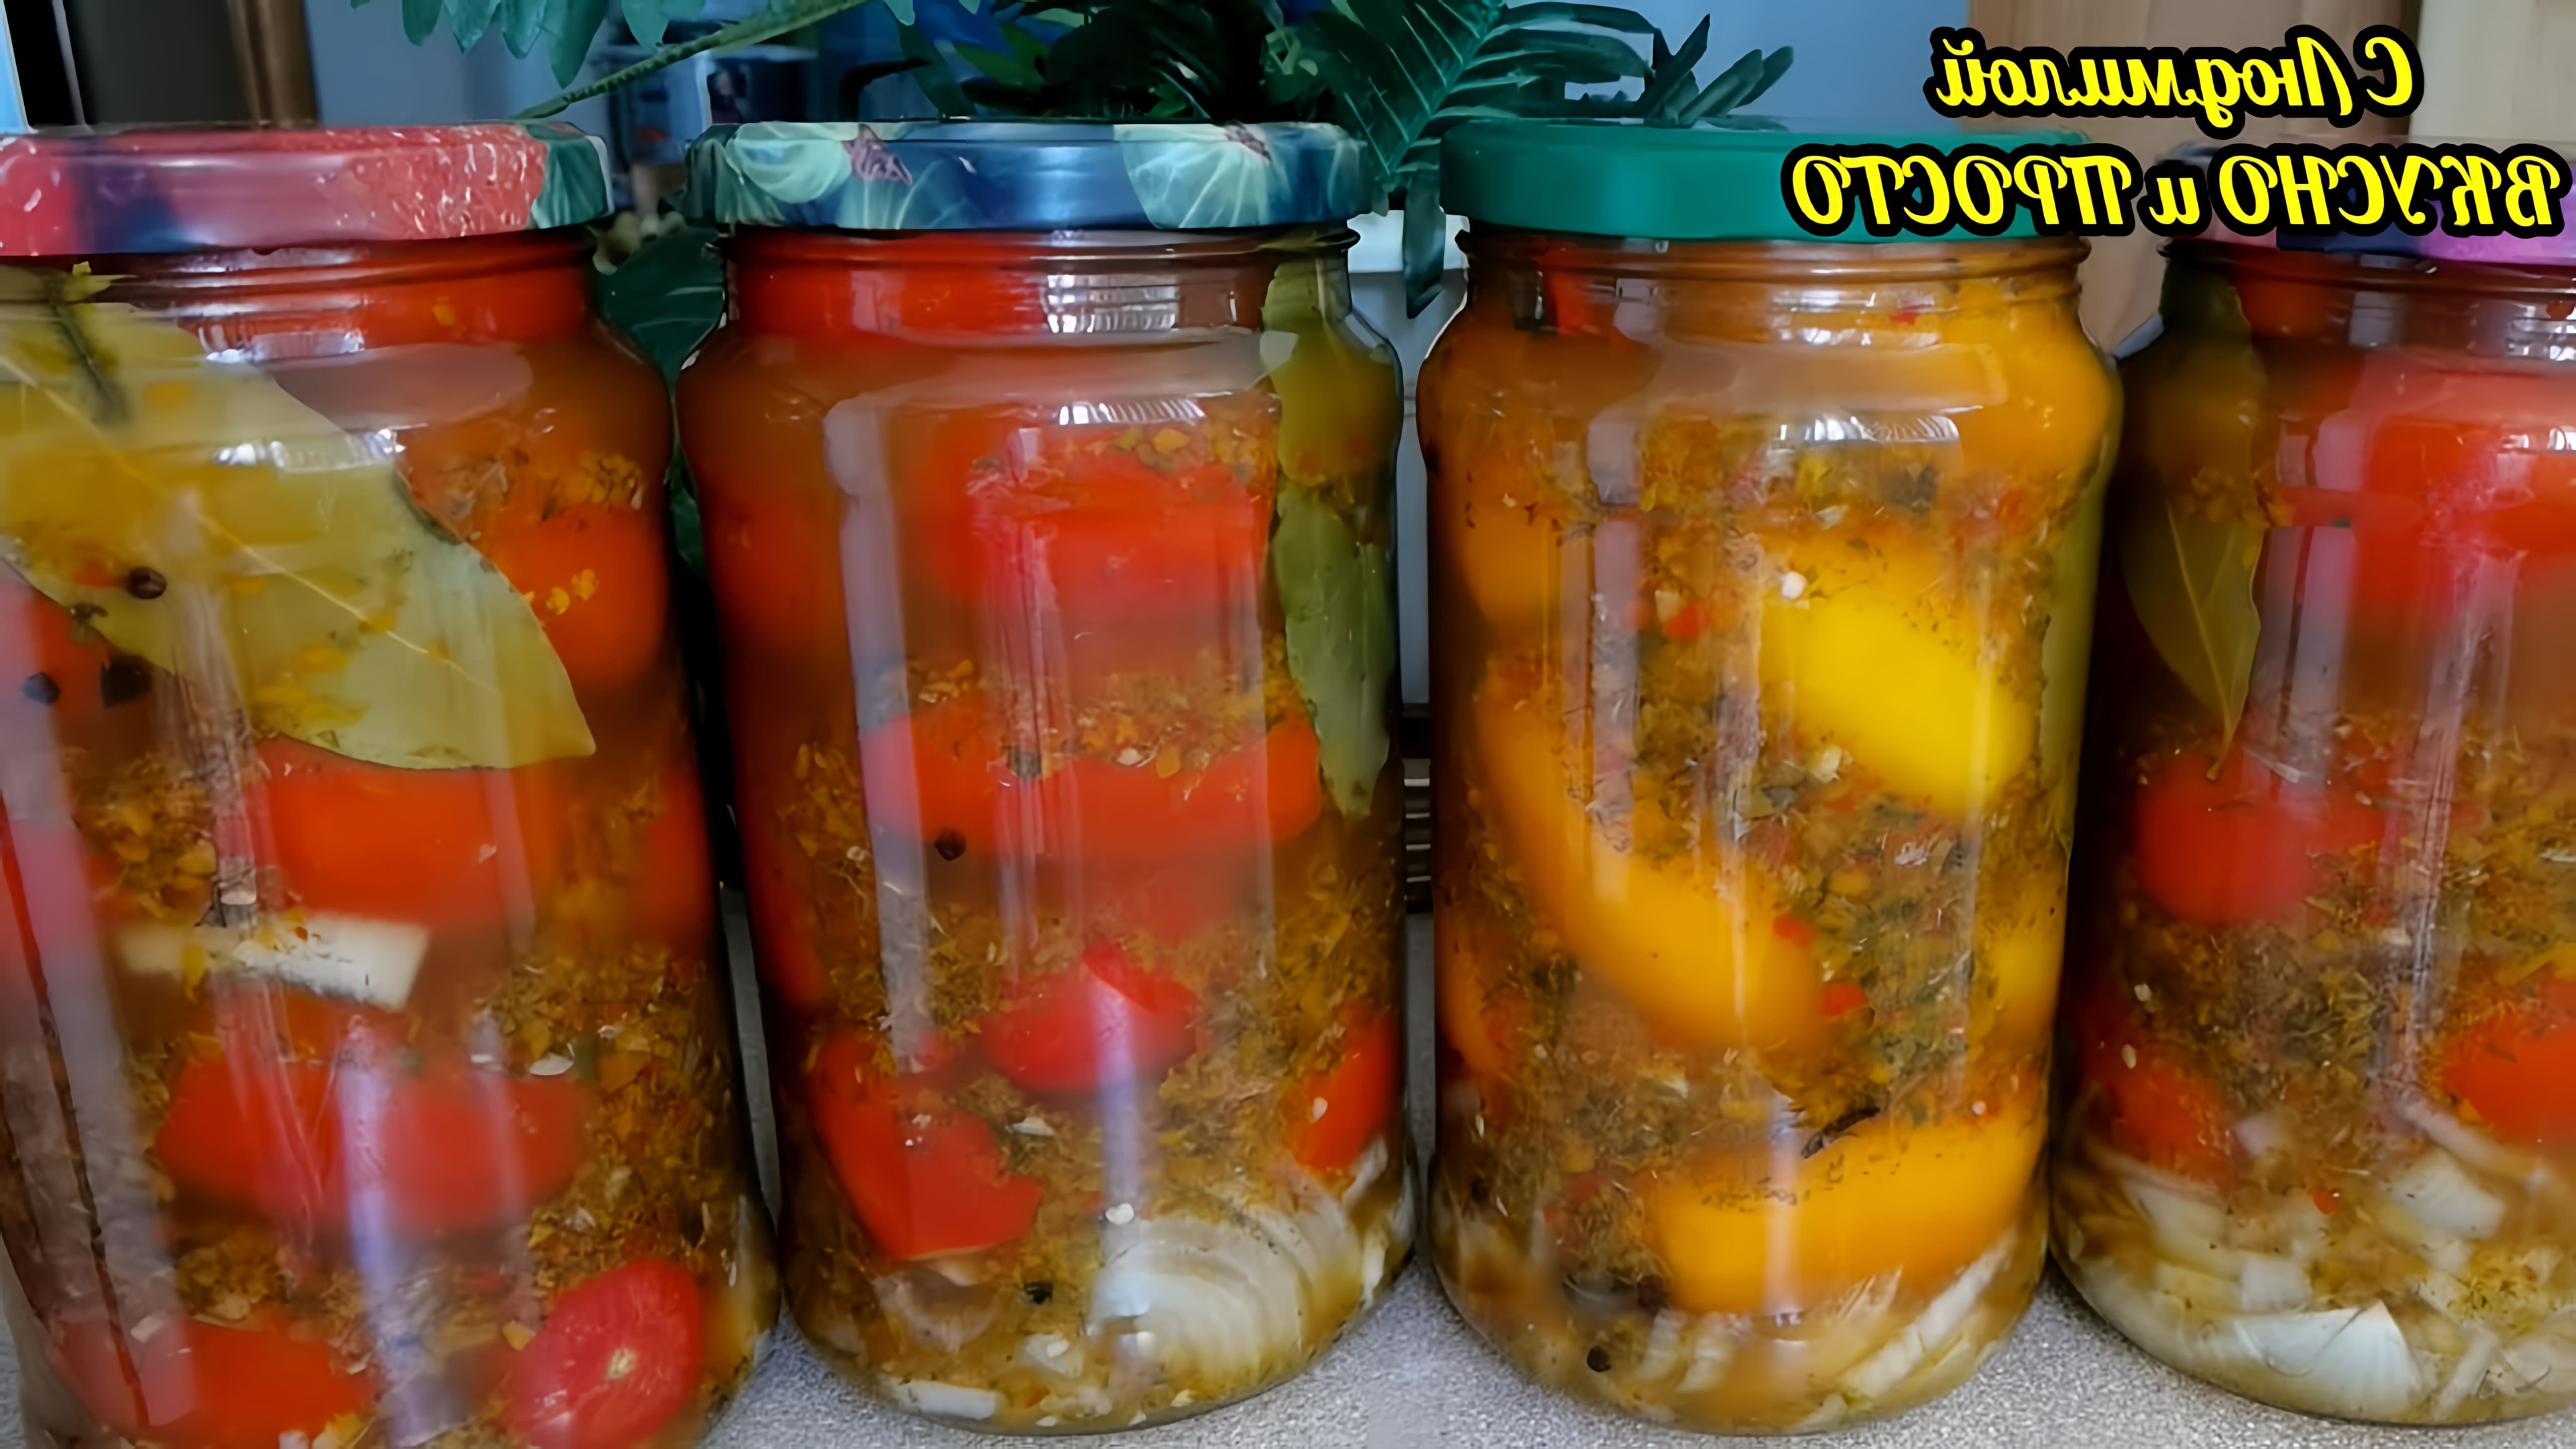 Видео рецепт маринованных помидоров на армянском, который очень популярен и запрашивается теми, кто его пробовал